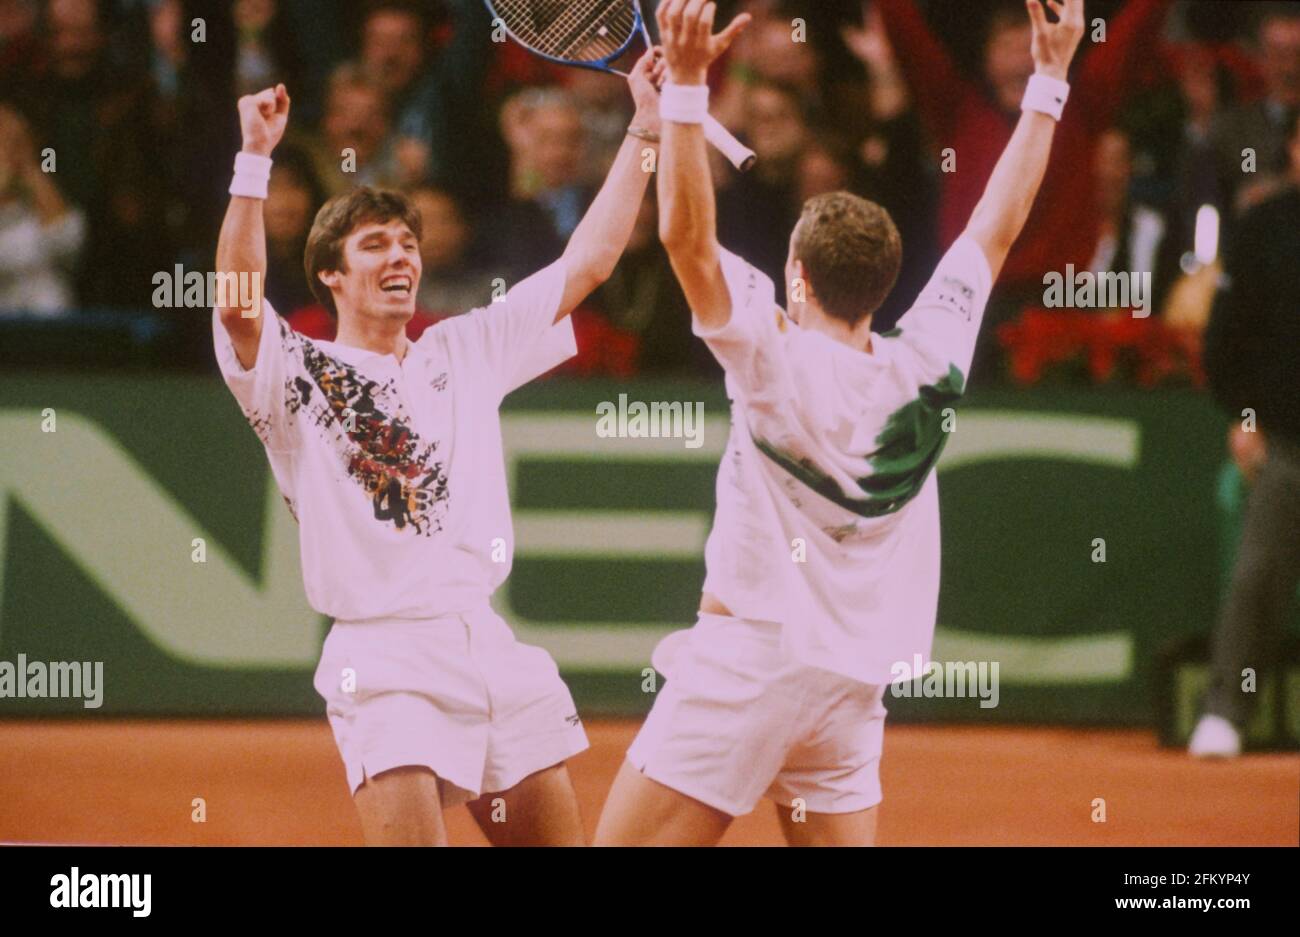 Duesseldorf, Germania, 05.12.1993, finale della Coppa Davis: Michael Stich e Patrick Kuehnen festeggiano. Foto Stock